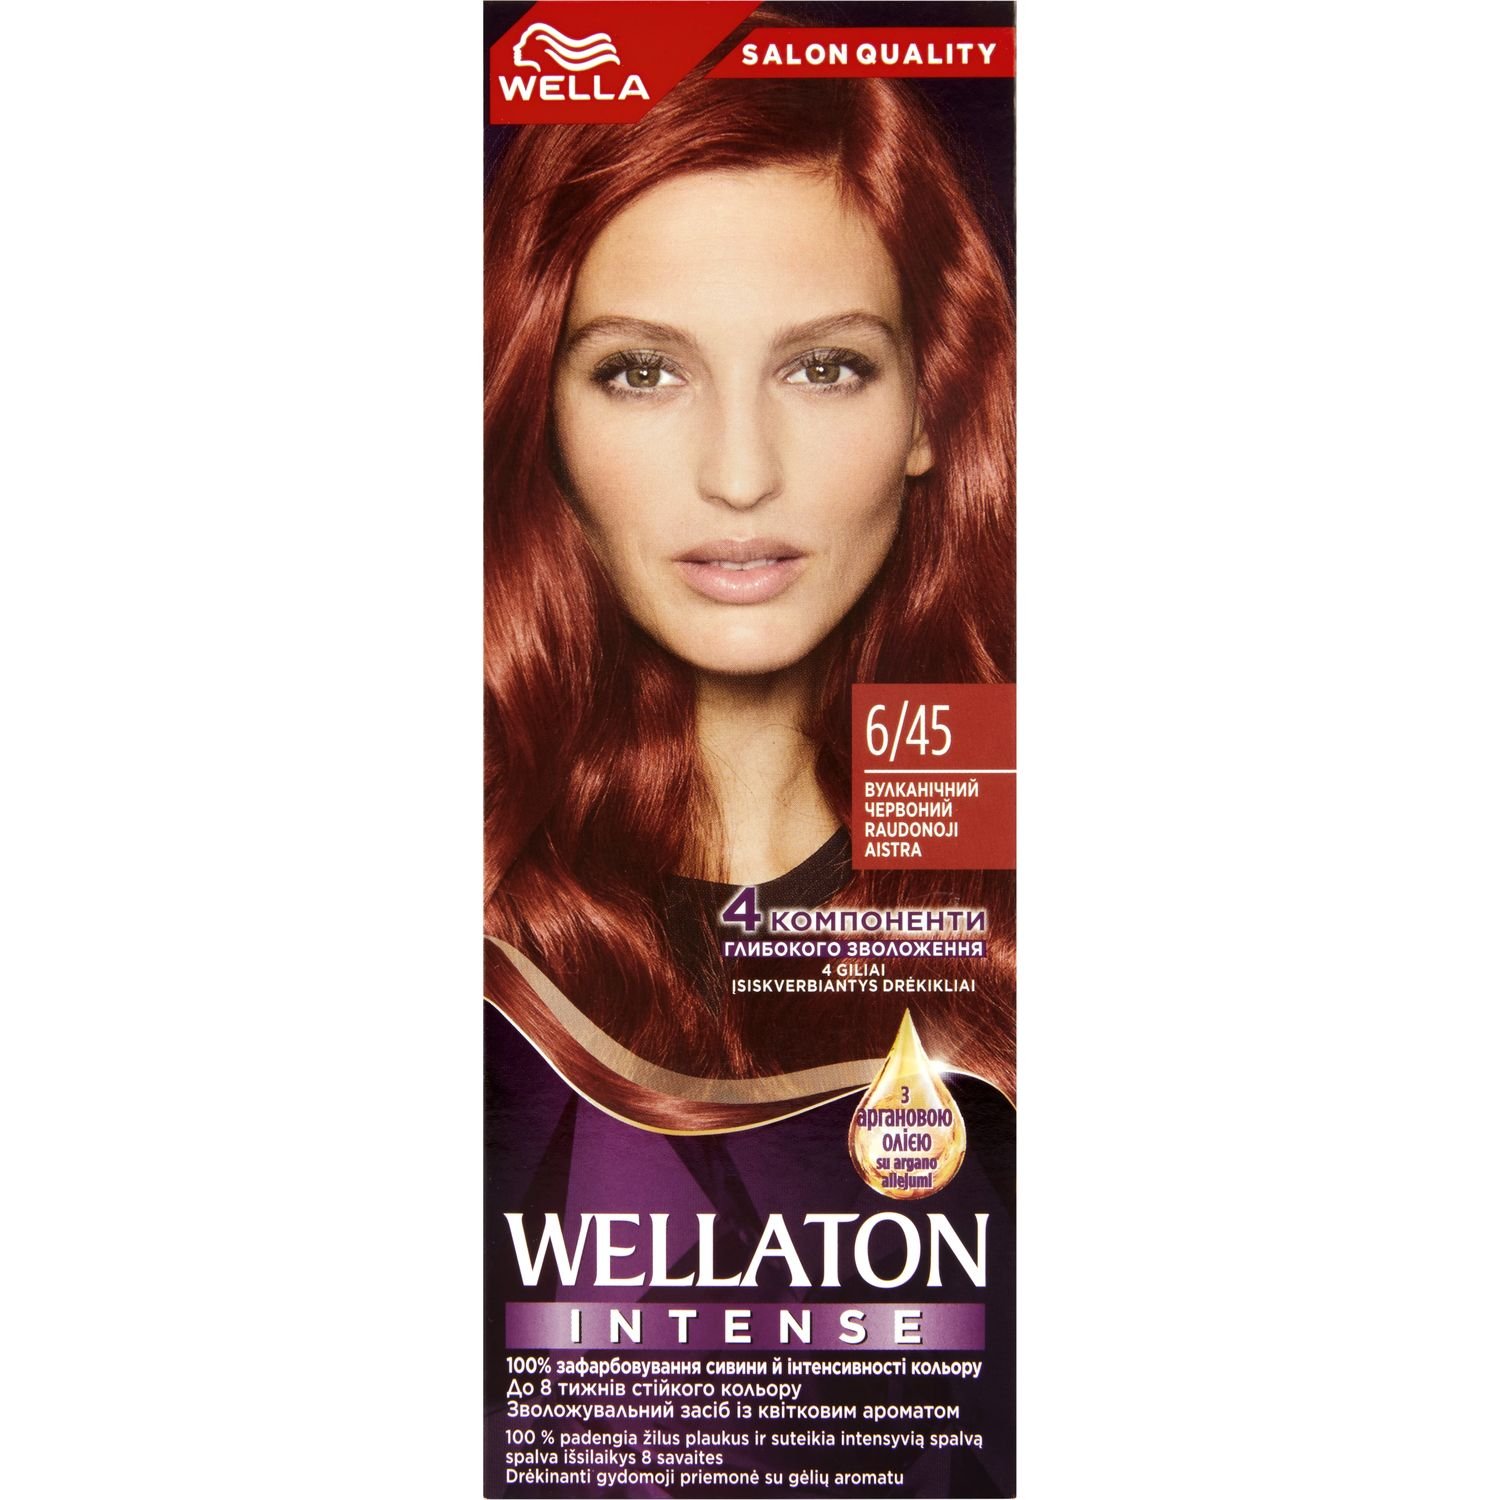 Інтенсивна крем-фарба для волосся Wellaton, відтінок 6/45 (Вулканічний червоний), 110 мл - фото 1